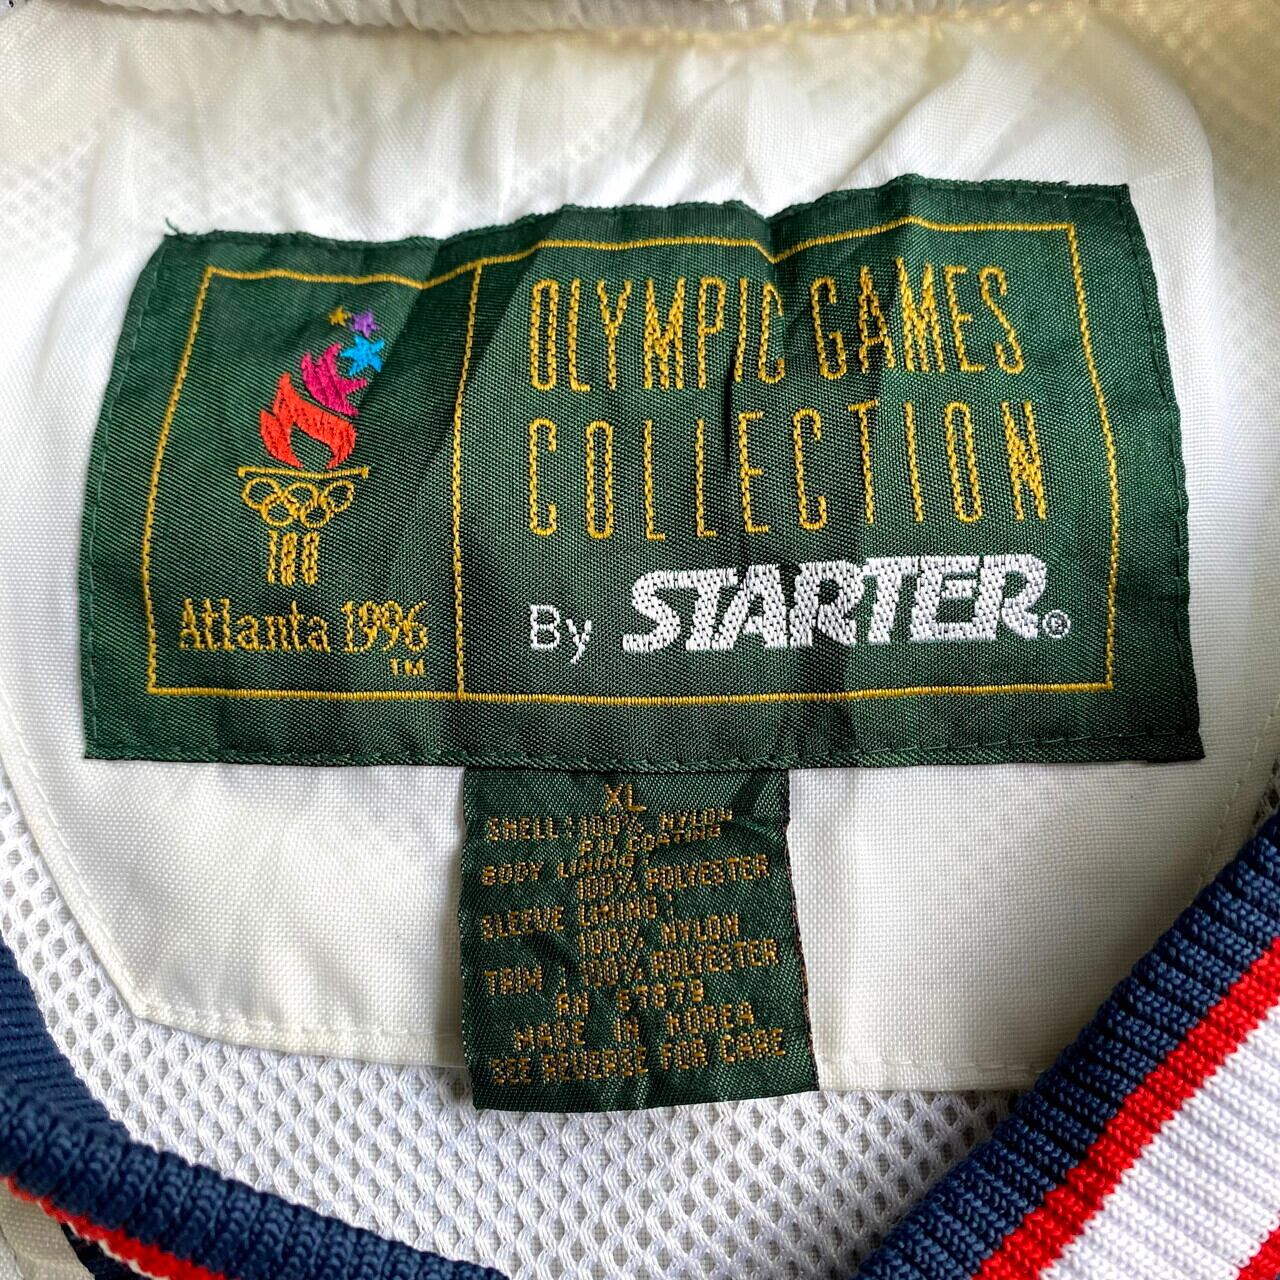 90s アトランタオリンピック 刺繍 マウンテンパーカー バイカラー  緑